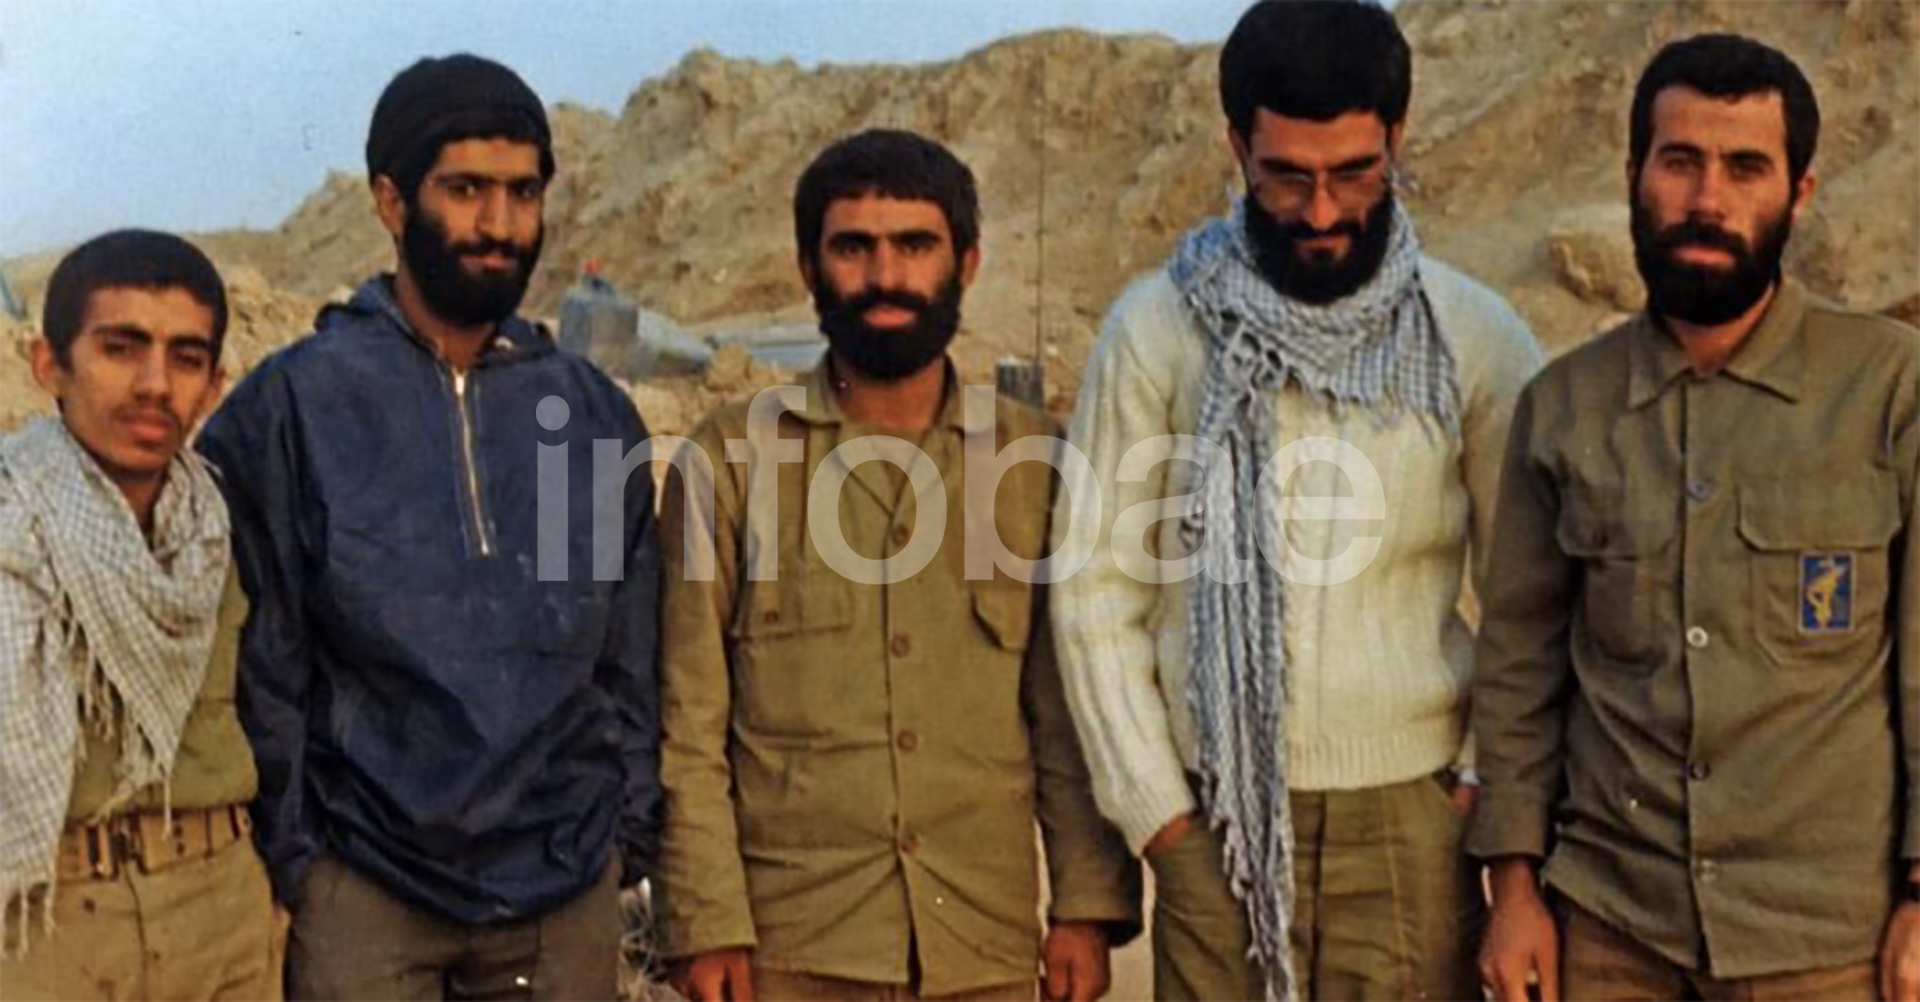 La foto donde aparece un hombre que sería el Ayatolla Jomeini